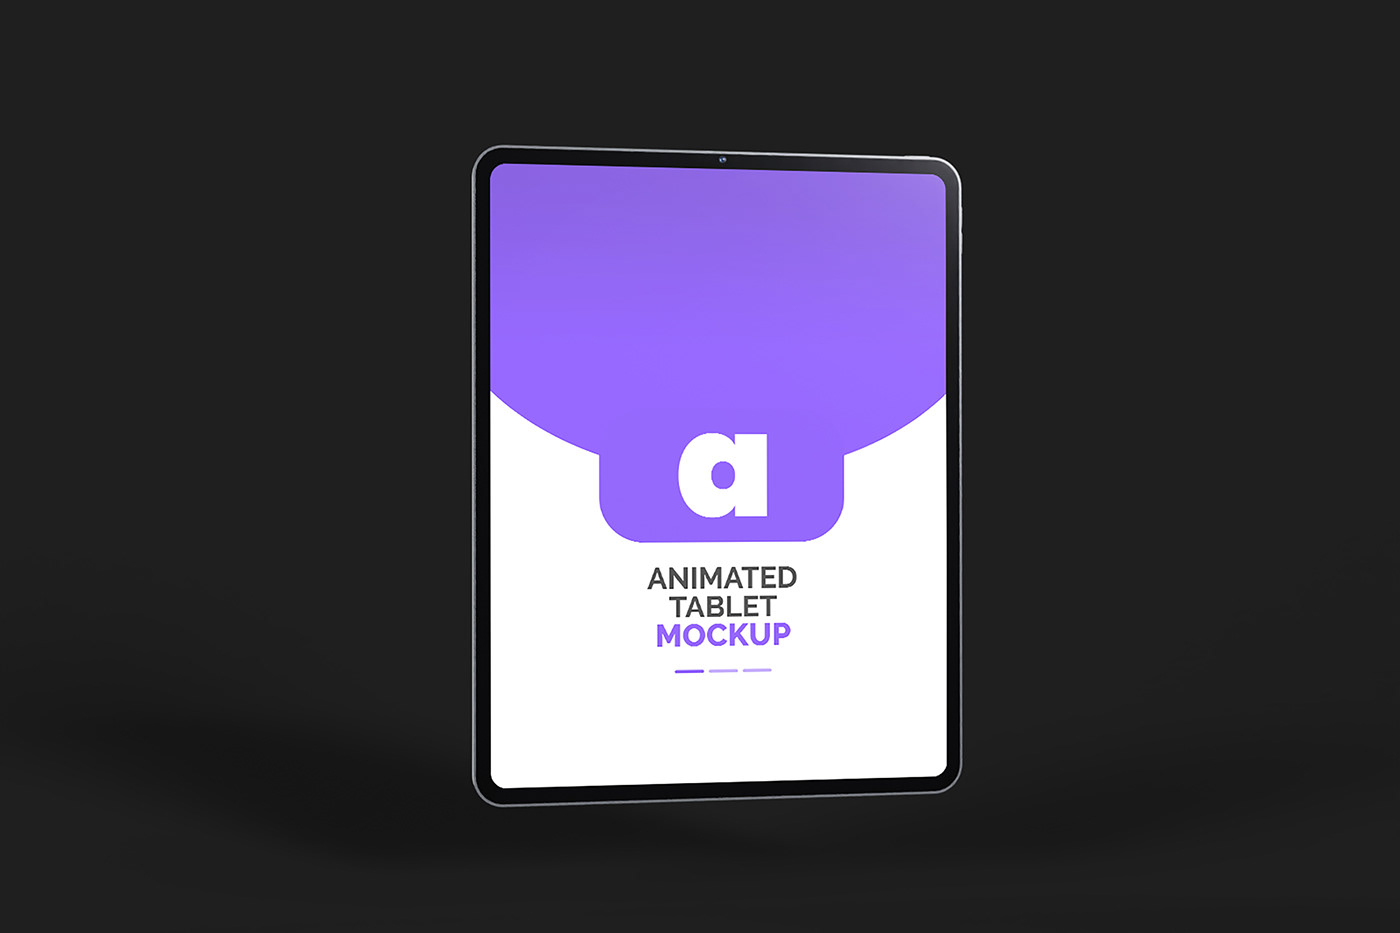 animated animated ipad mockup Animated Tablet Mockup iPad Pro M1 ipad pro m2 Mockup presentation tablet UI Web